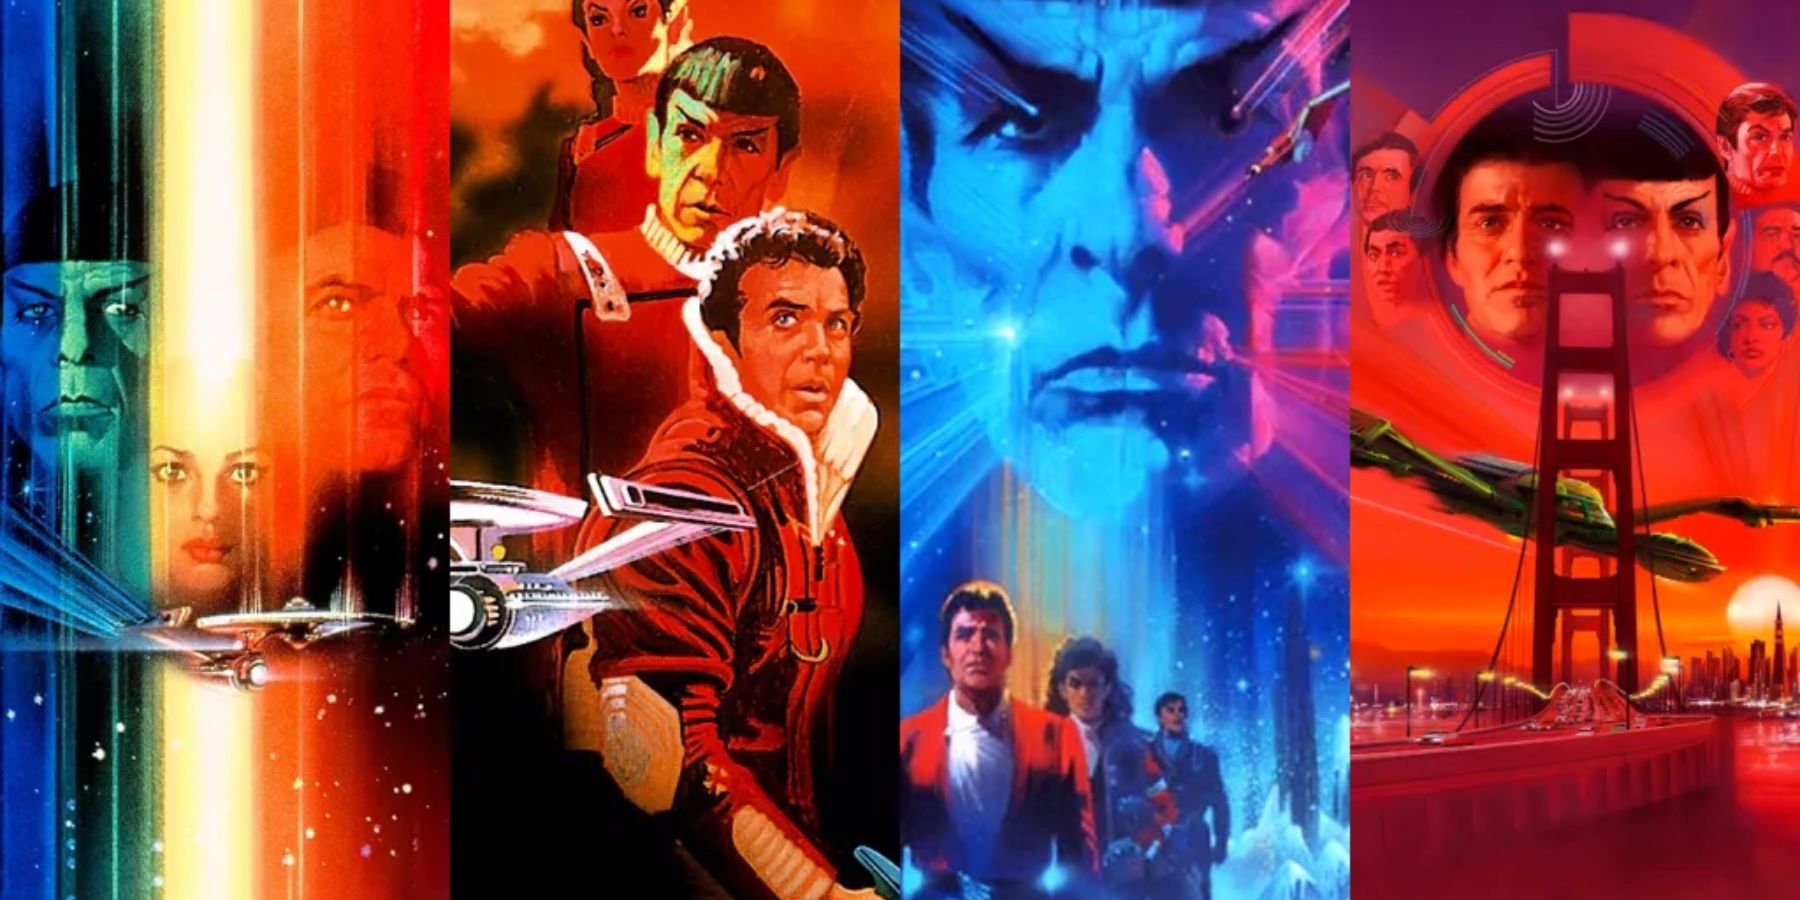 Ποια είναι η καλύτερη παραγγελία για να παρακολουθήσετε τις ταινίες Star Trek;